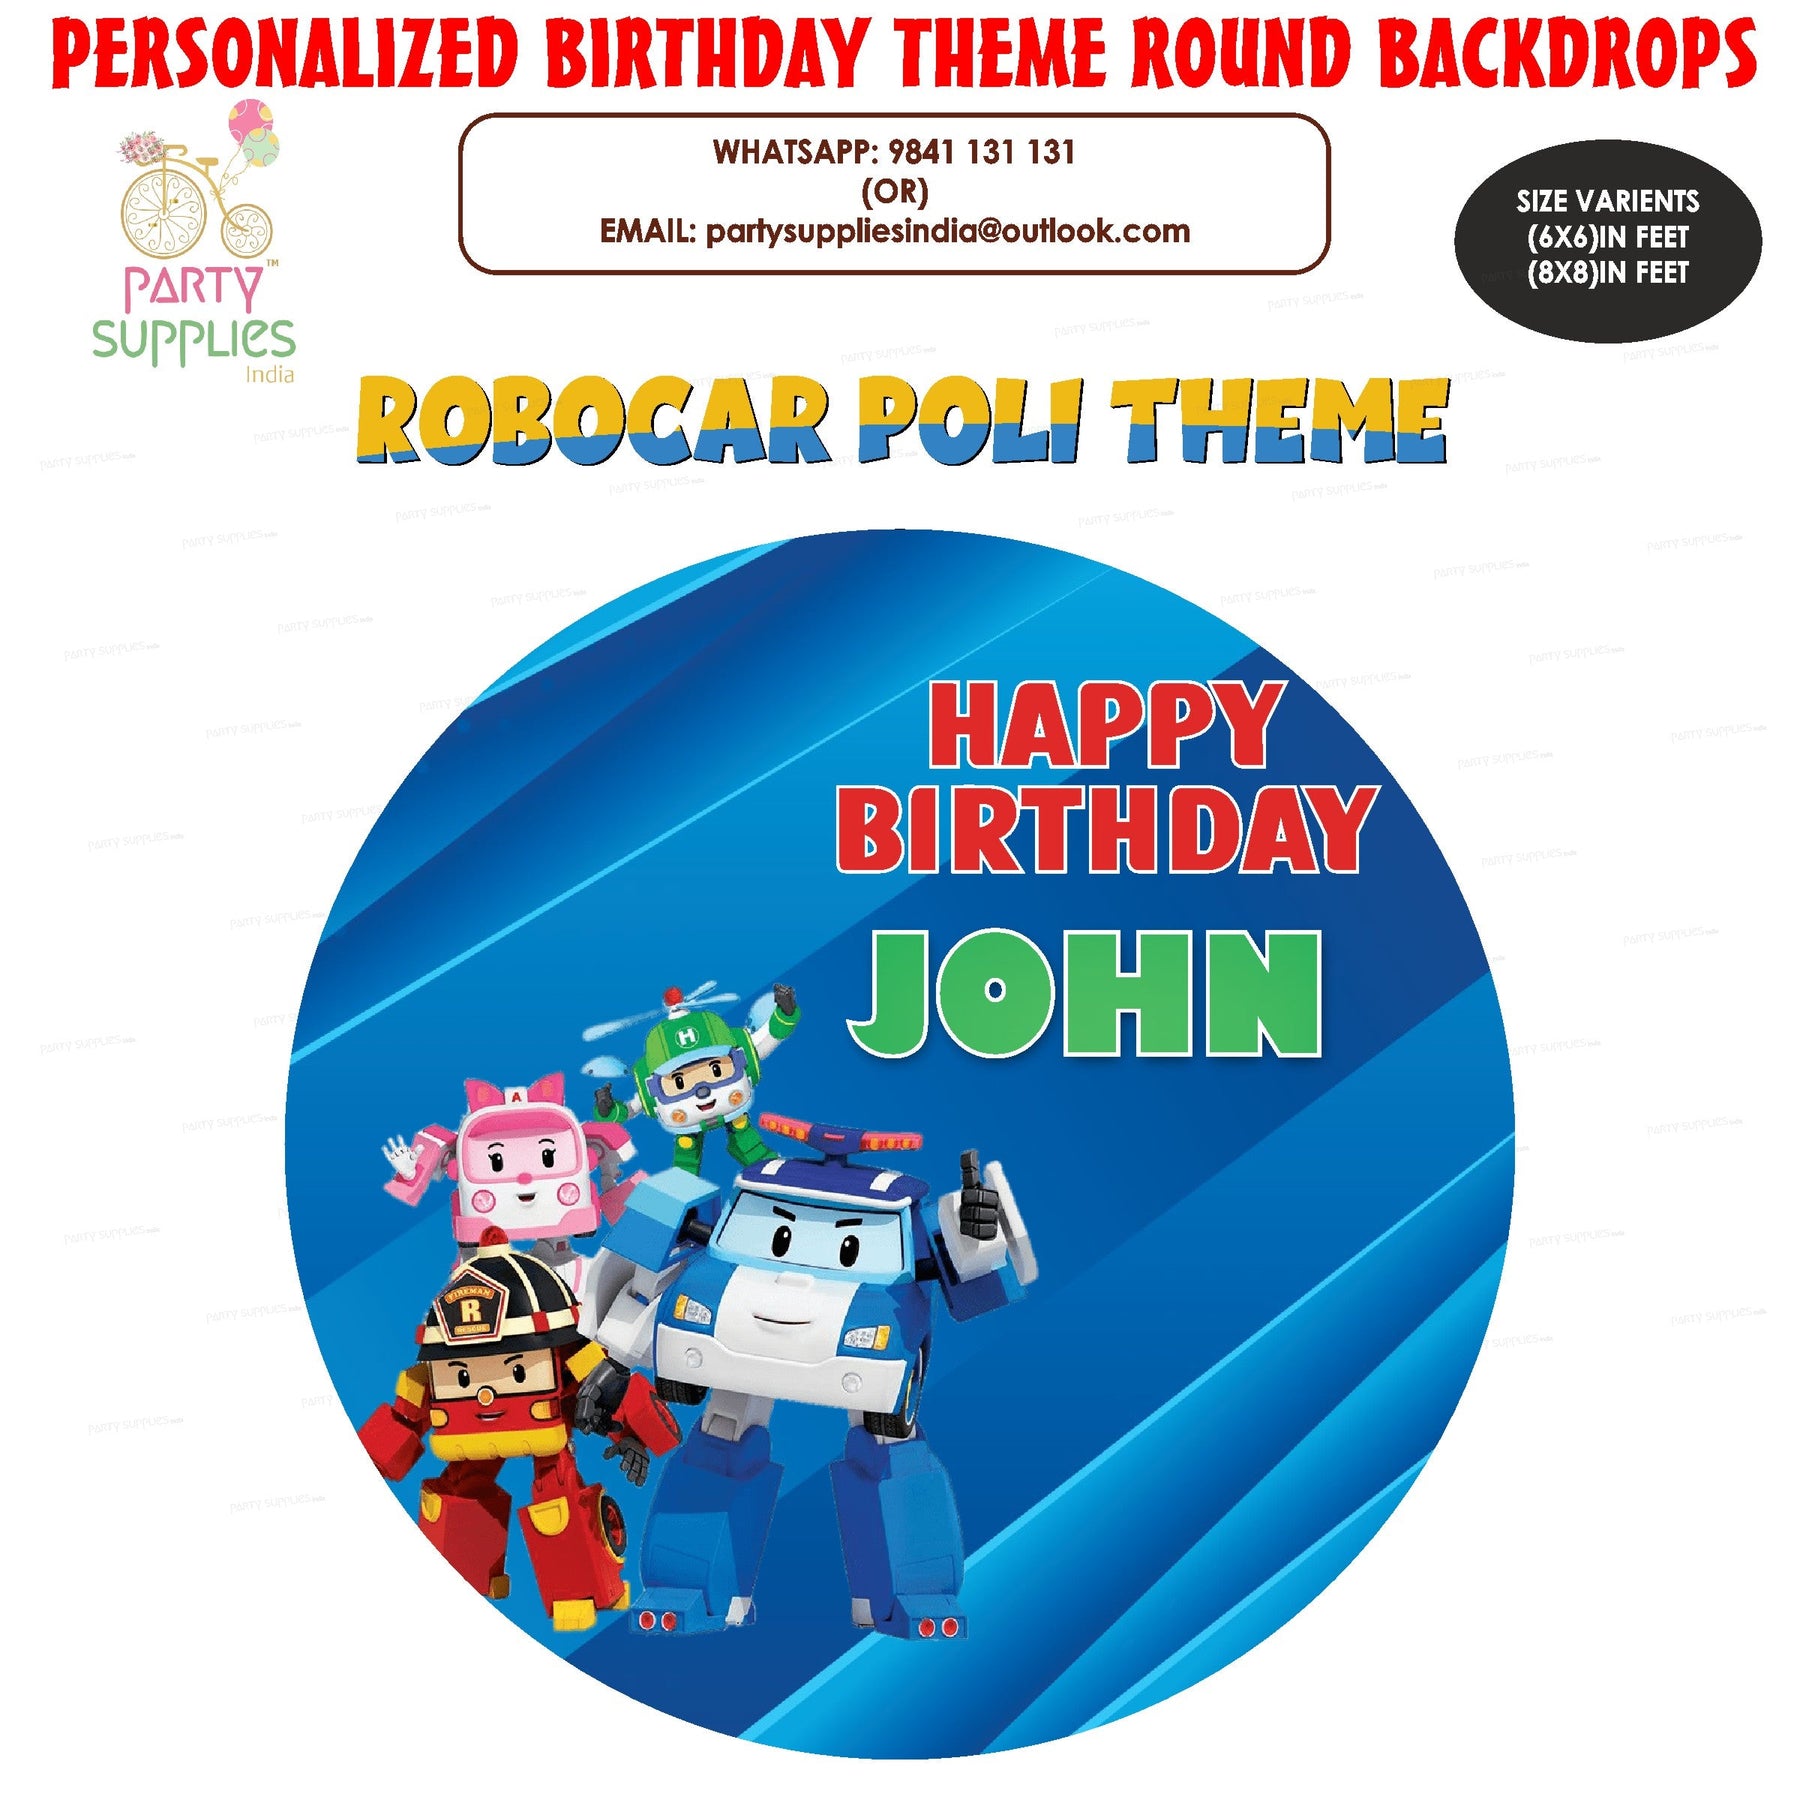 PSI Robo Poli Theme Customized Round Backdrop